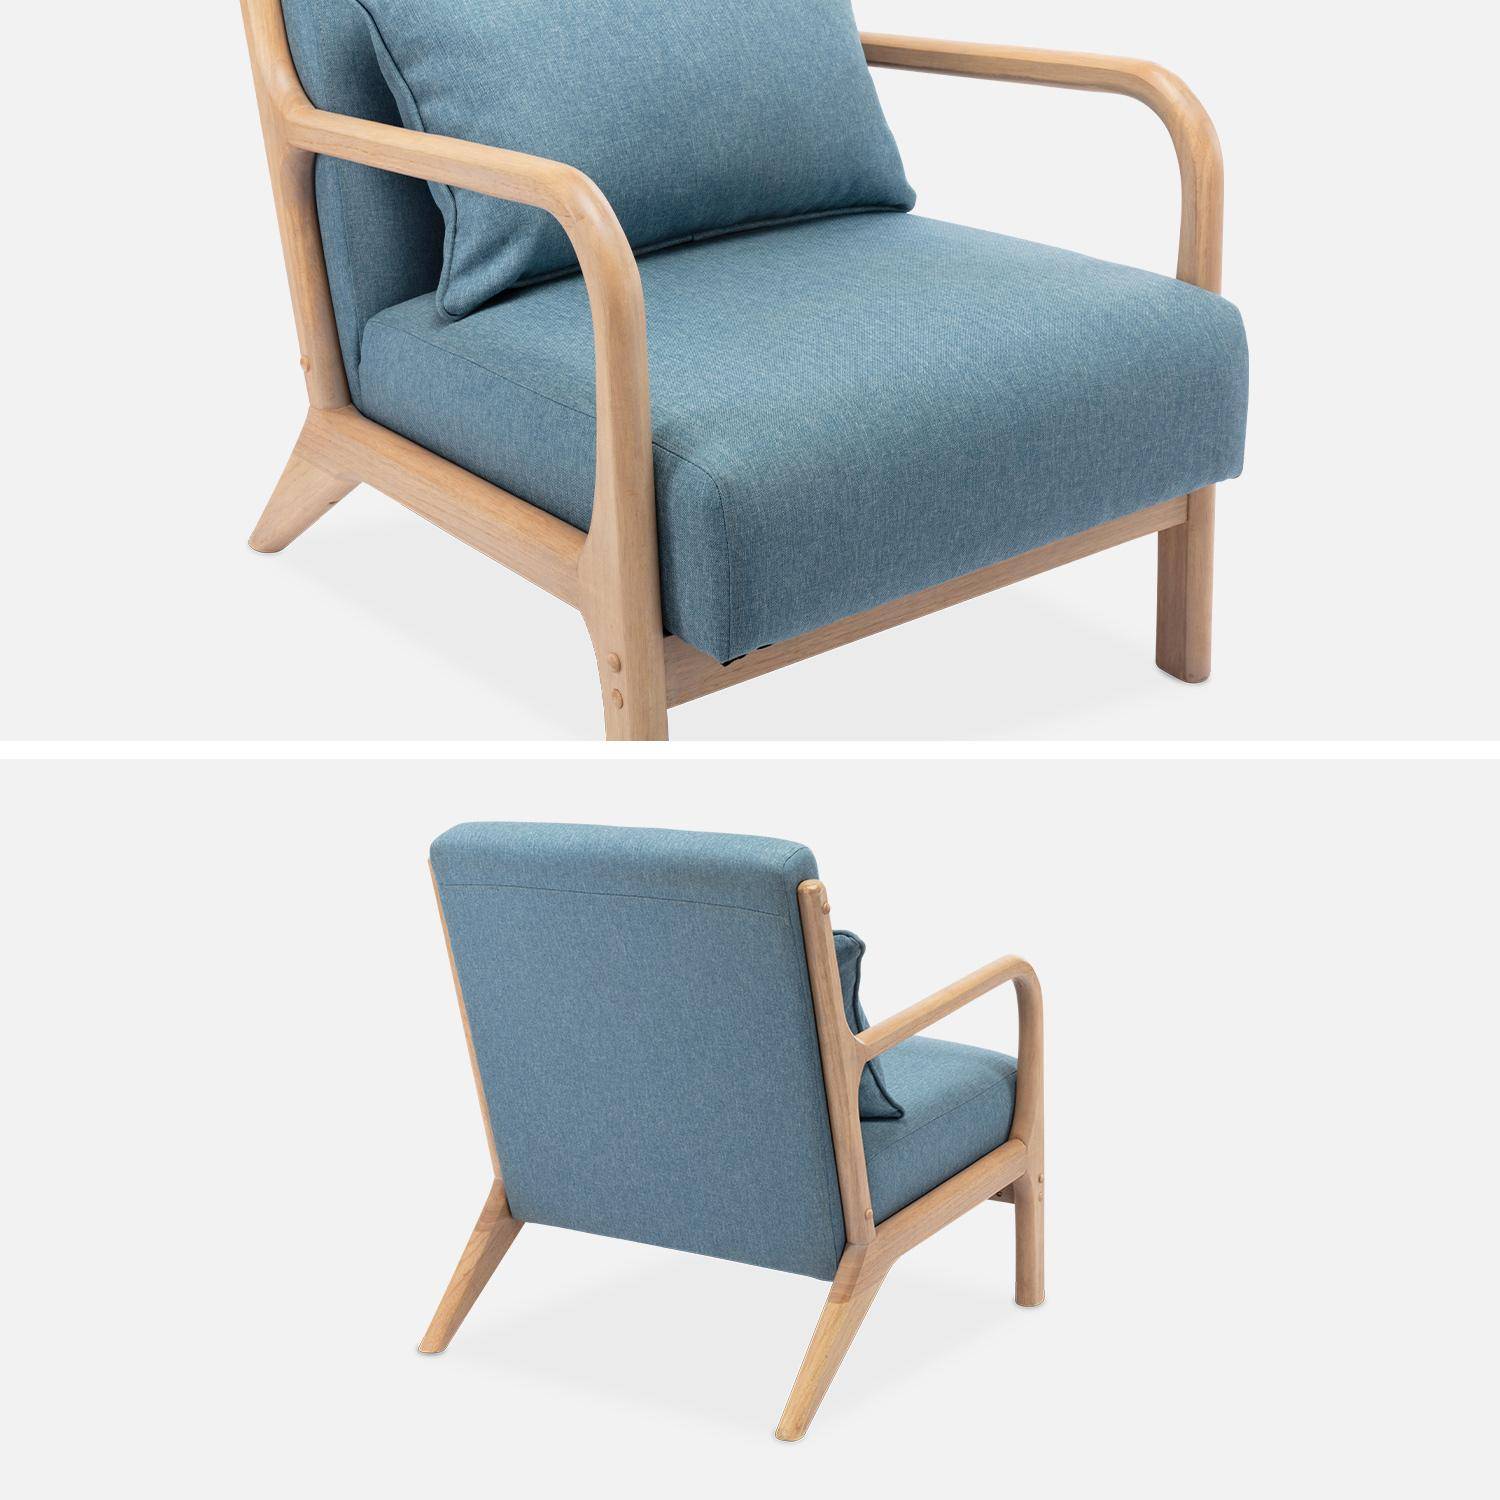 Sillón de diseño en madera y tela, 1 asiento recto fijo, patas de compás escandinavas, asiento cómodo, armazón de madera maciza, azul,sweeek,Photo6